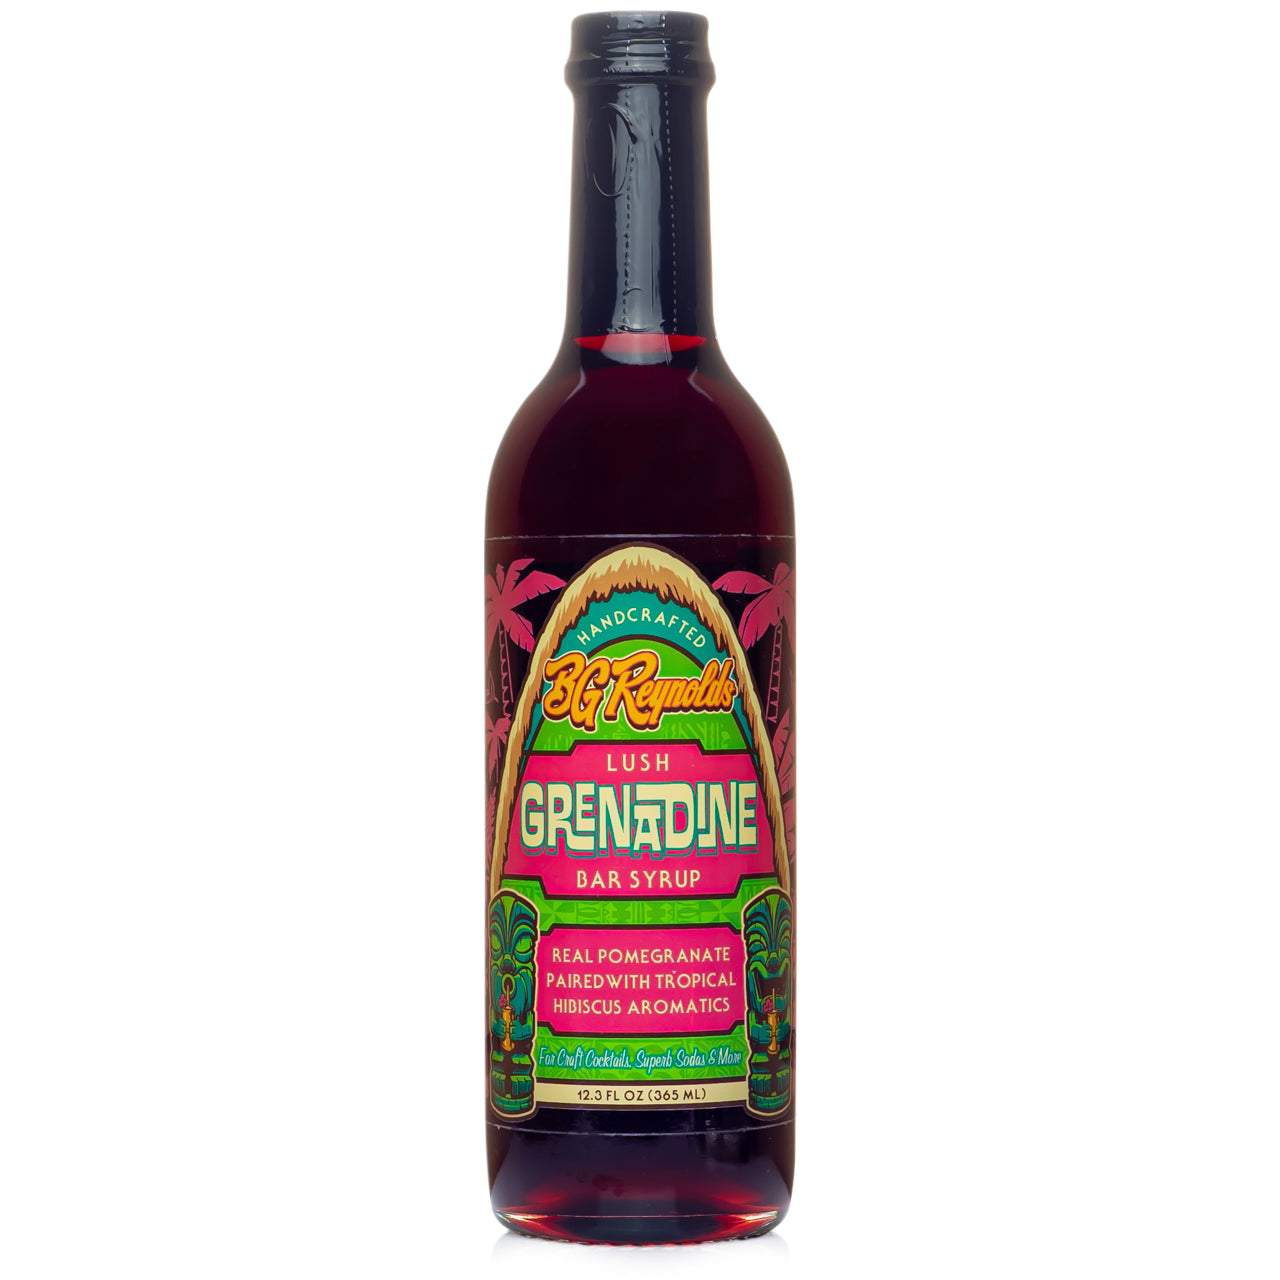 BG Reynolds Lush Grenadine Syrup